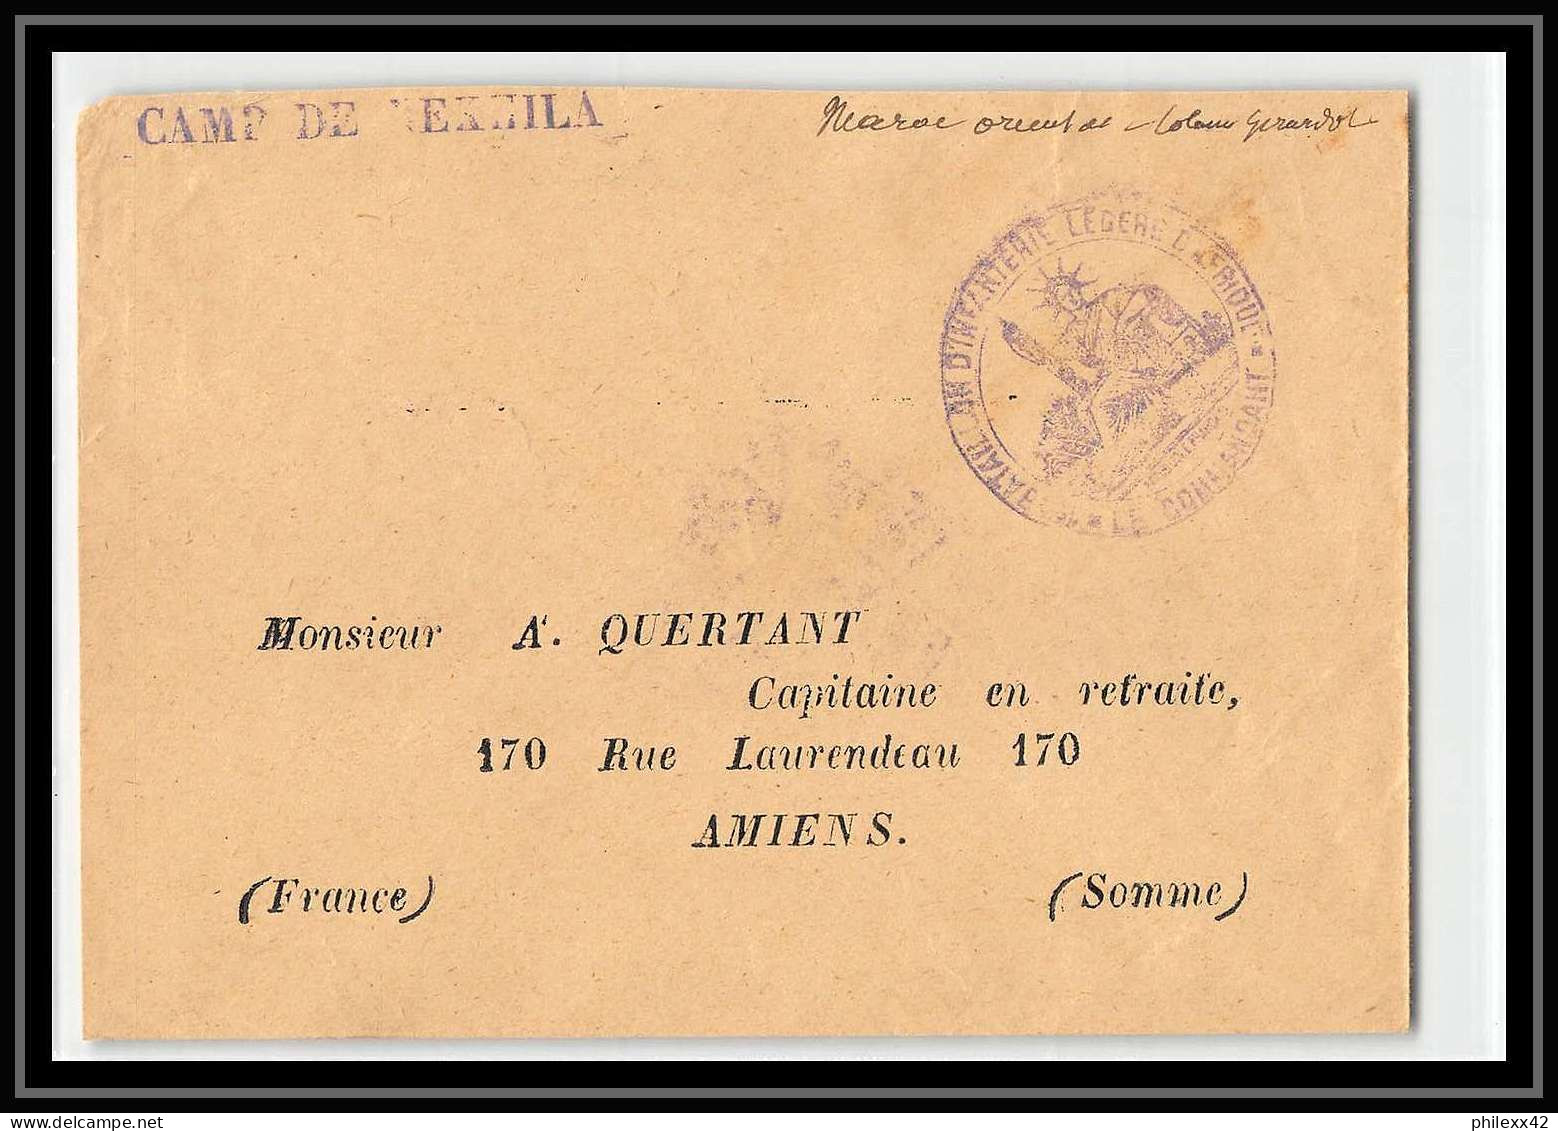 1023 Poste Griffe Camp De Nekhila 1913 Lettre Cover Occupation Du Maroc War - Lettres & Documents